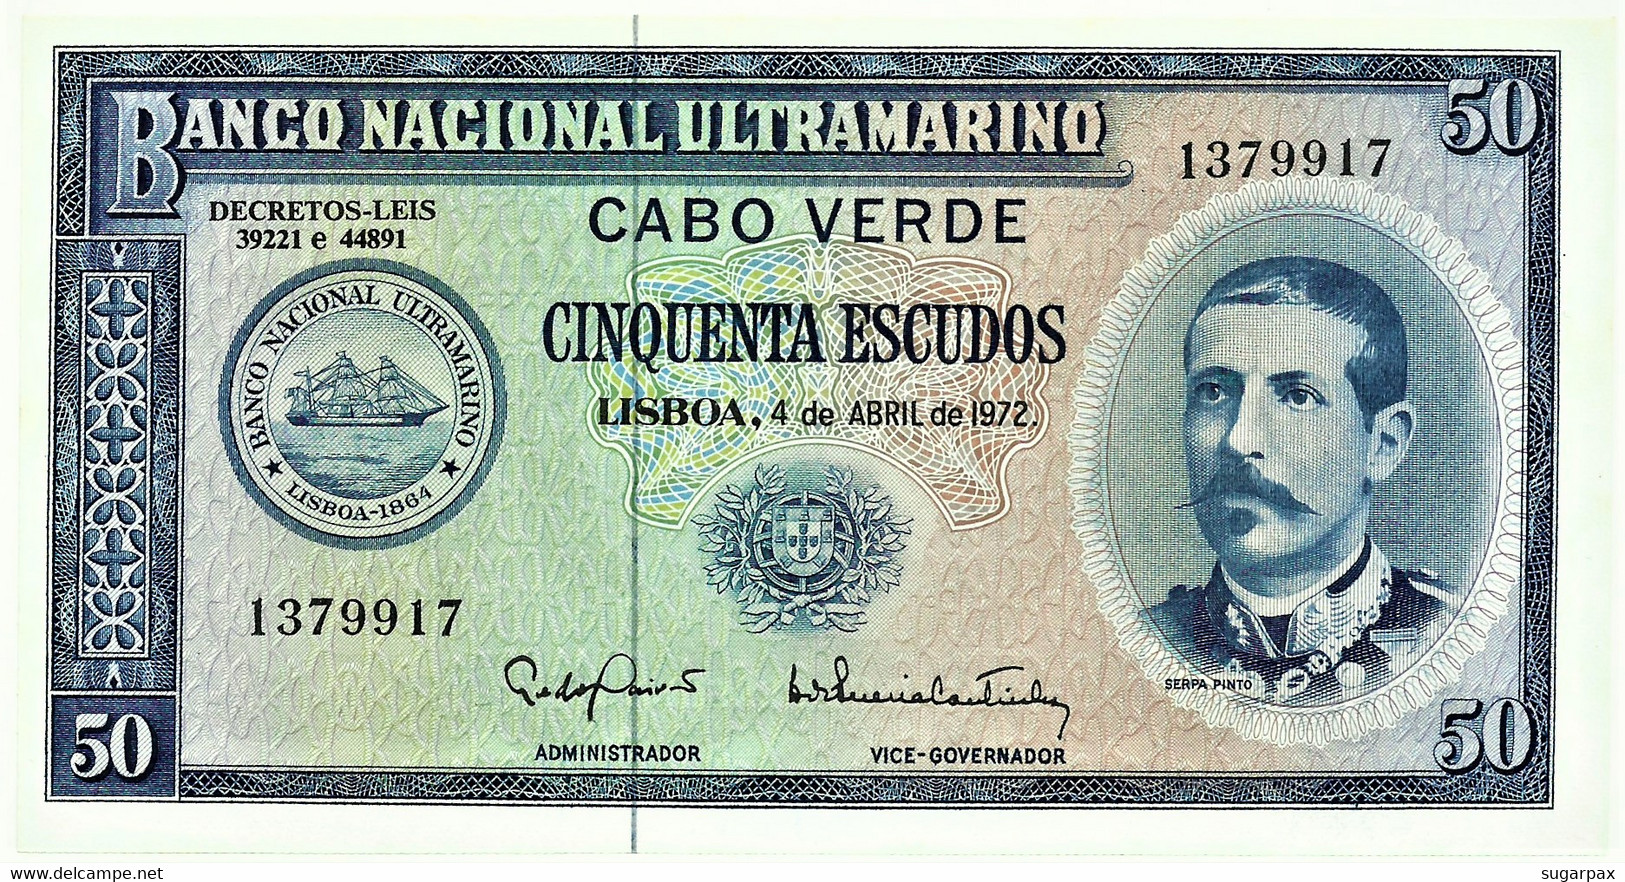 CAPE VERDE - 50 ESCUDOS - 04.04.1972 - Pick 53 - Unc. - Serpa Pinto - Portugal Cabo - Cap Vert